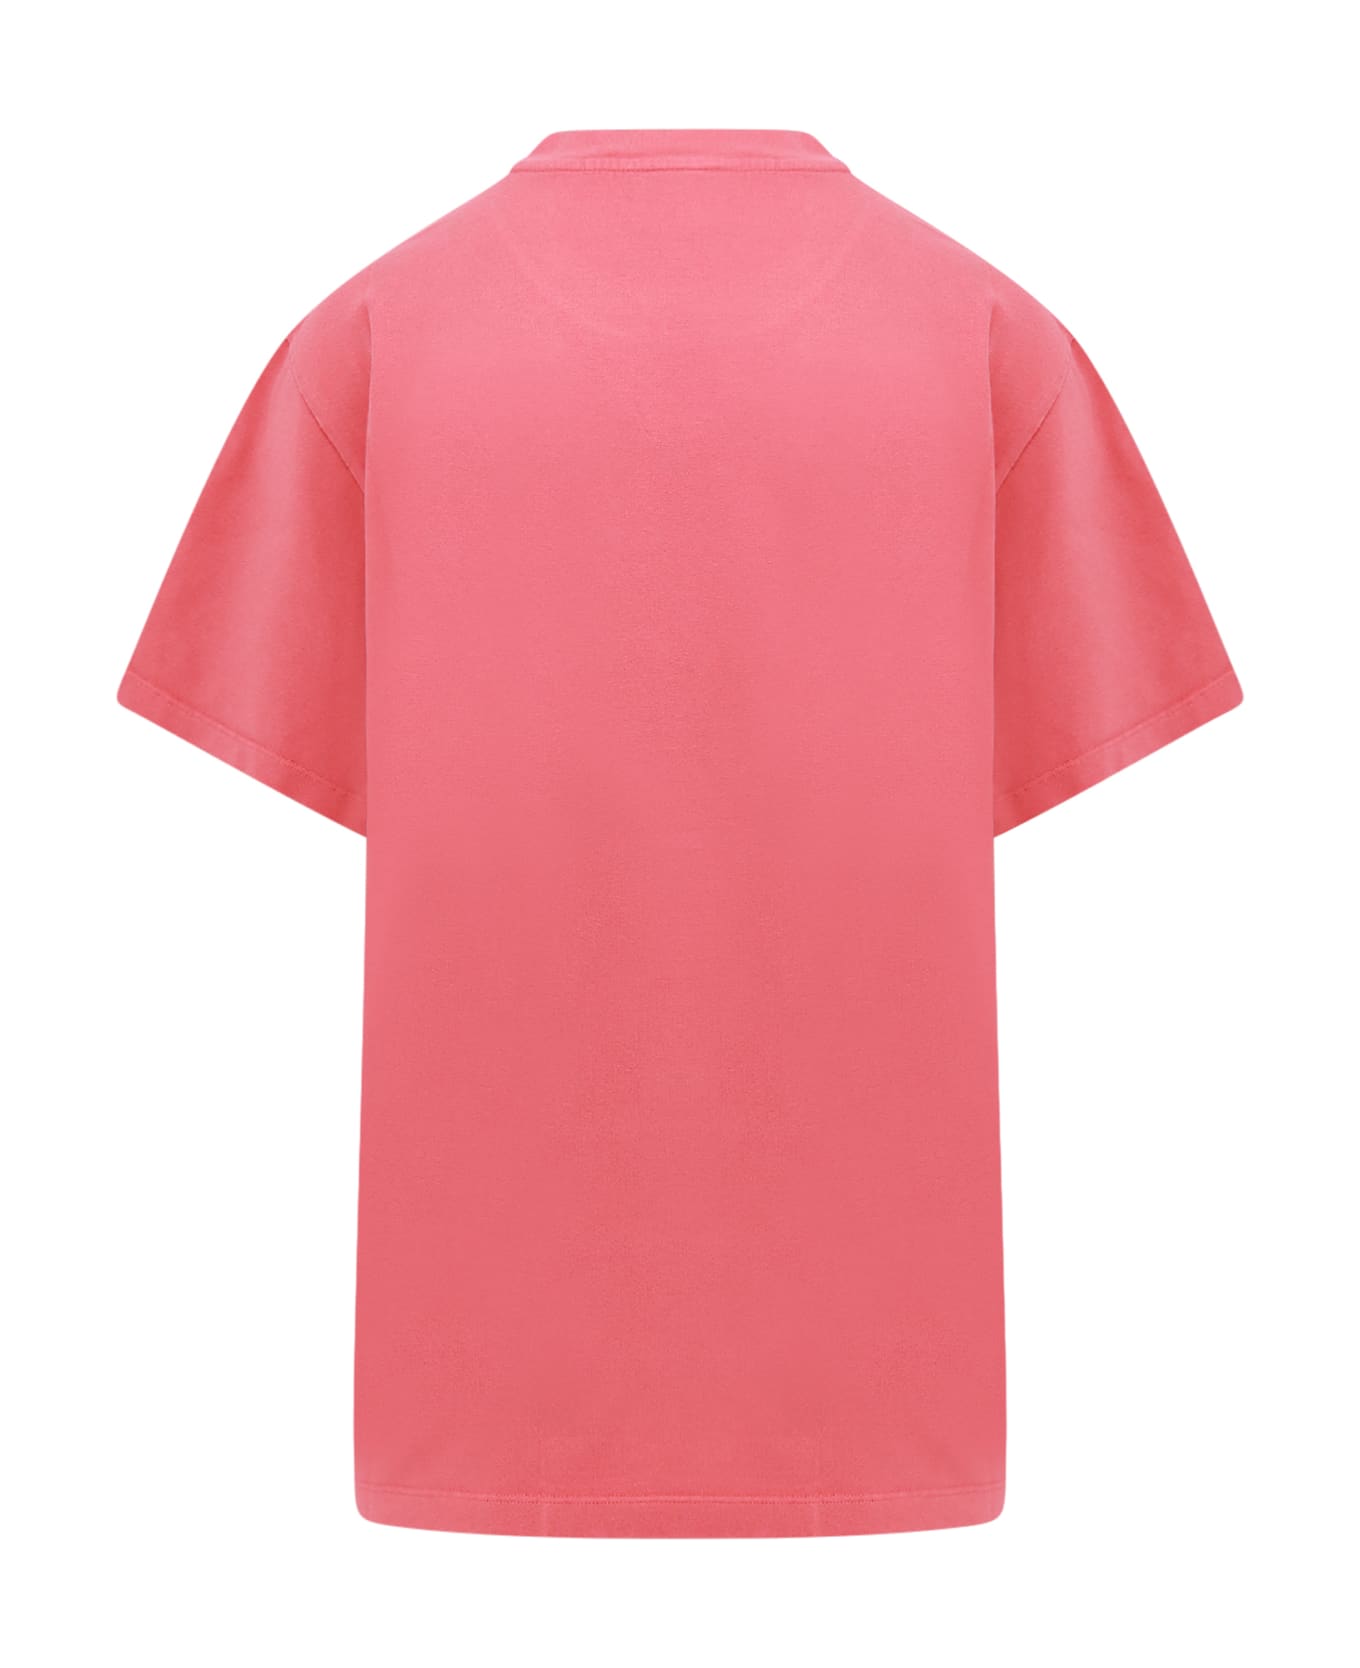 Stella McCartney Iconic T-shirt - Pink